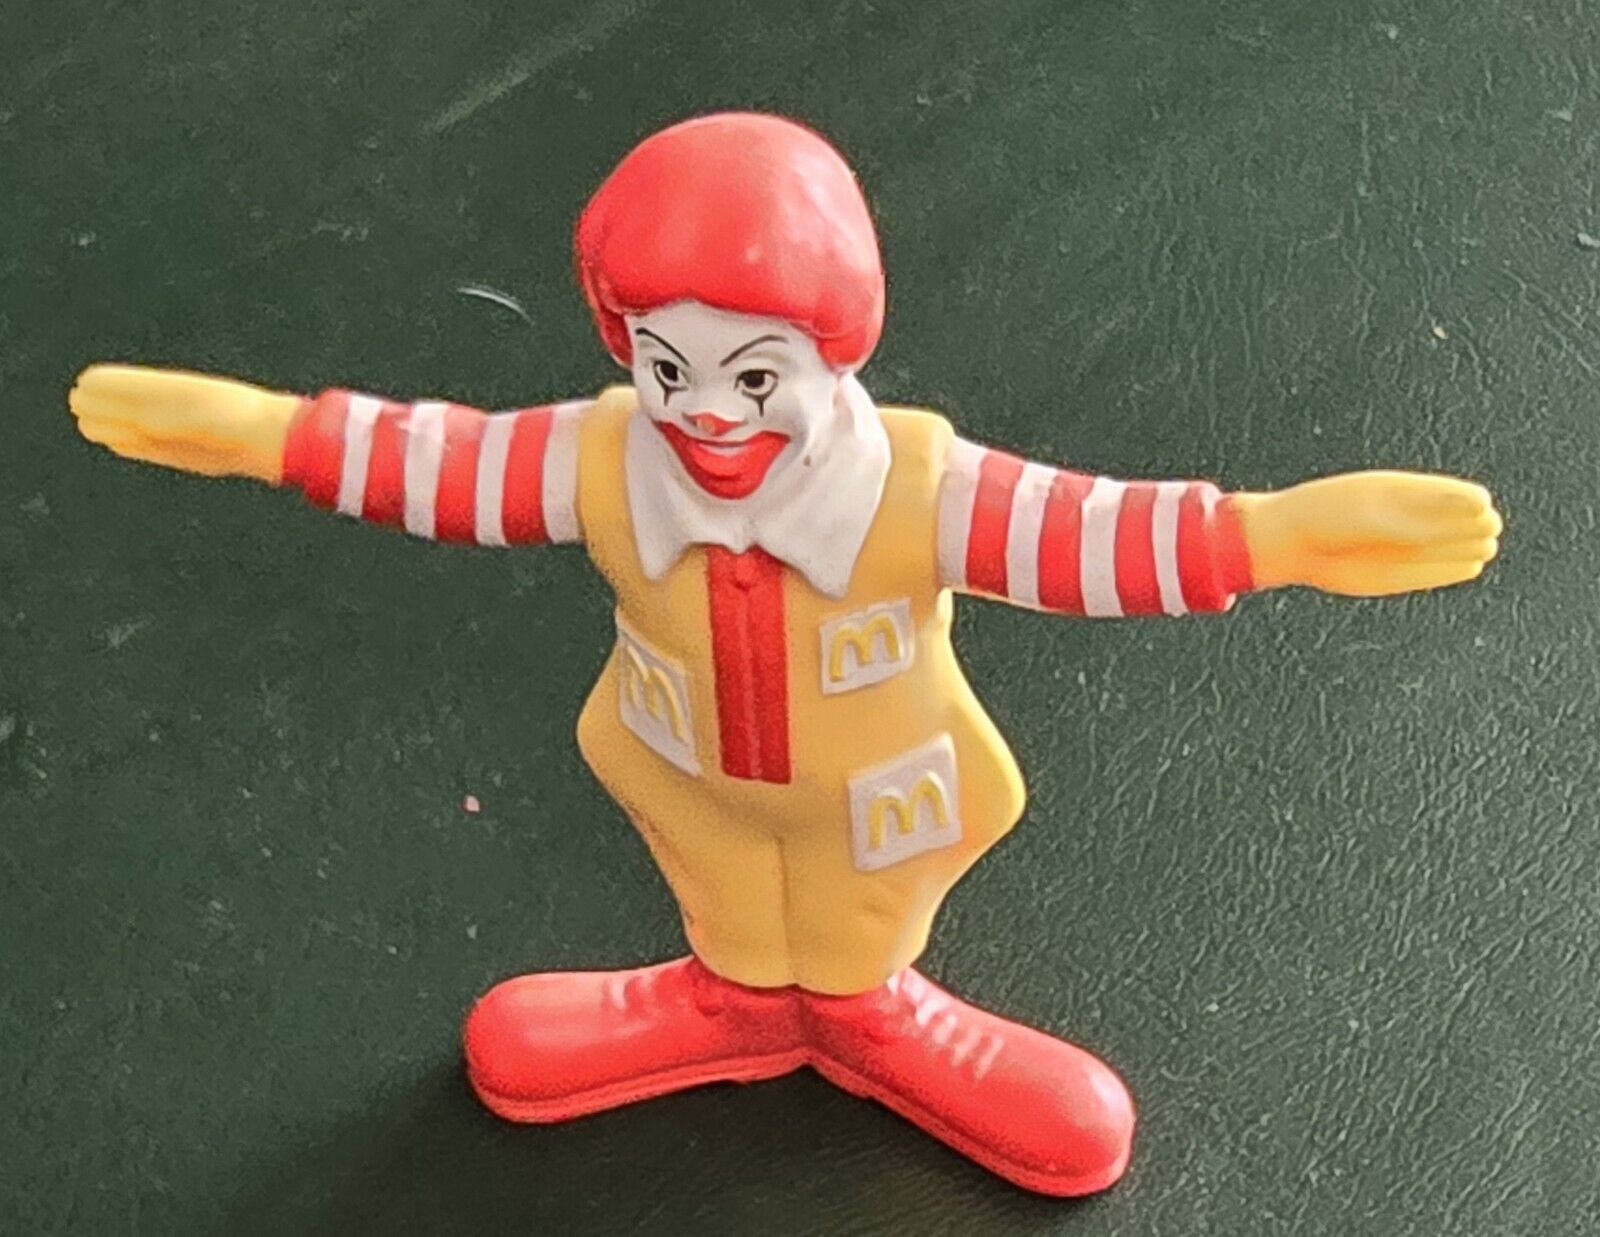 Vintage 1995 McDonalds Happy Meal Ronald McDonald PVC Figure Toy